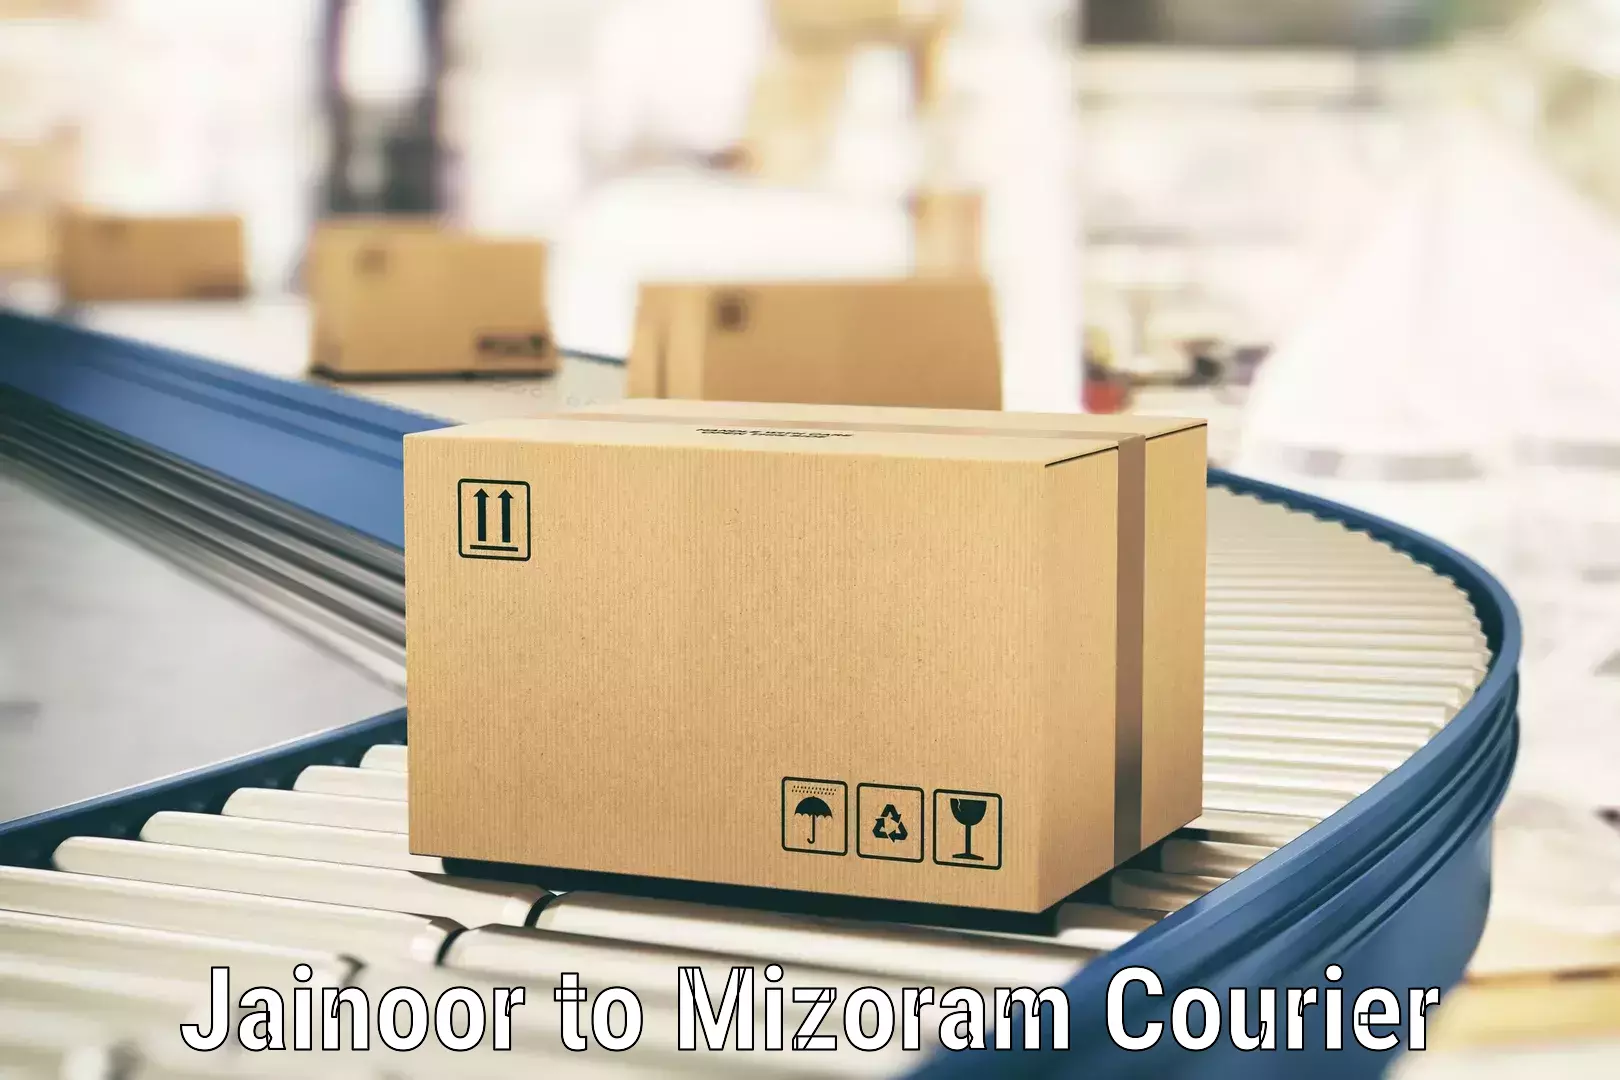 Efficient parcel tracking Jainoor to Mizoram